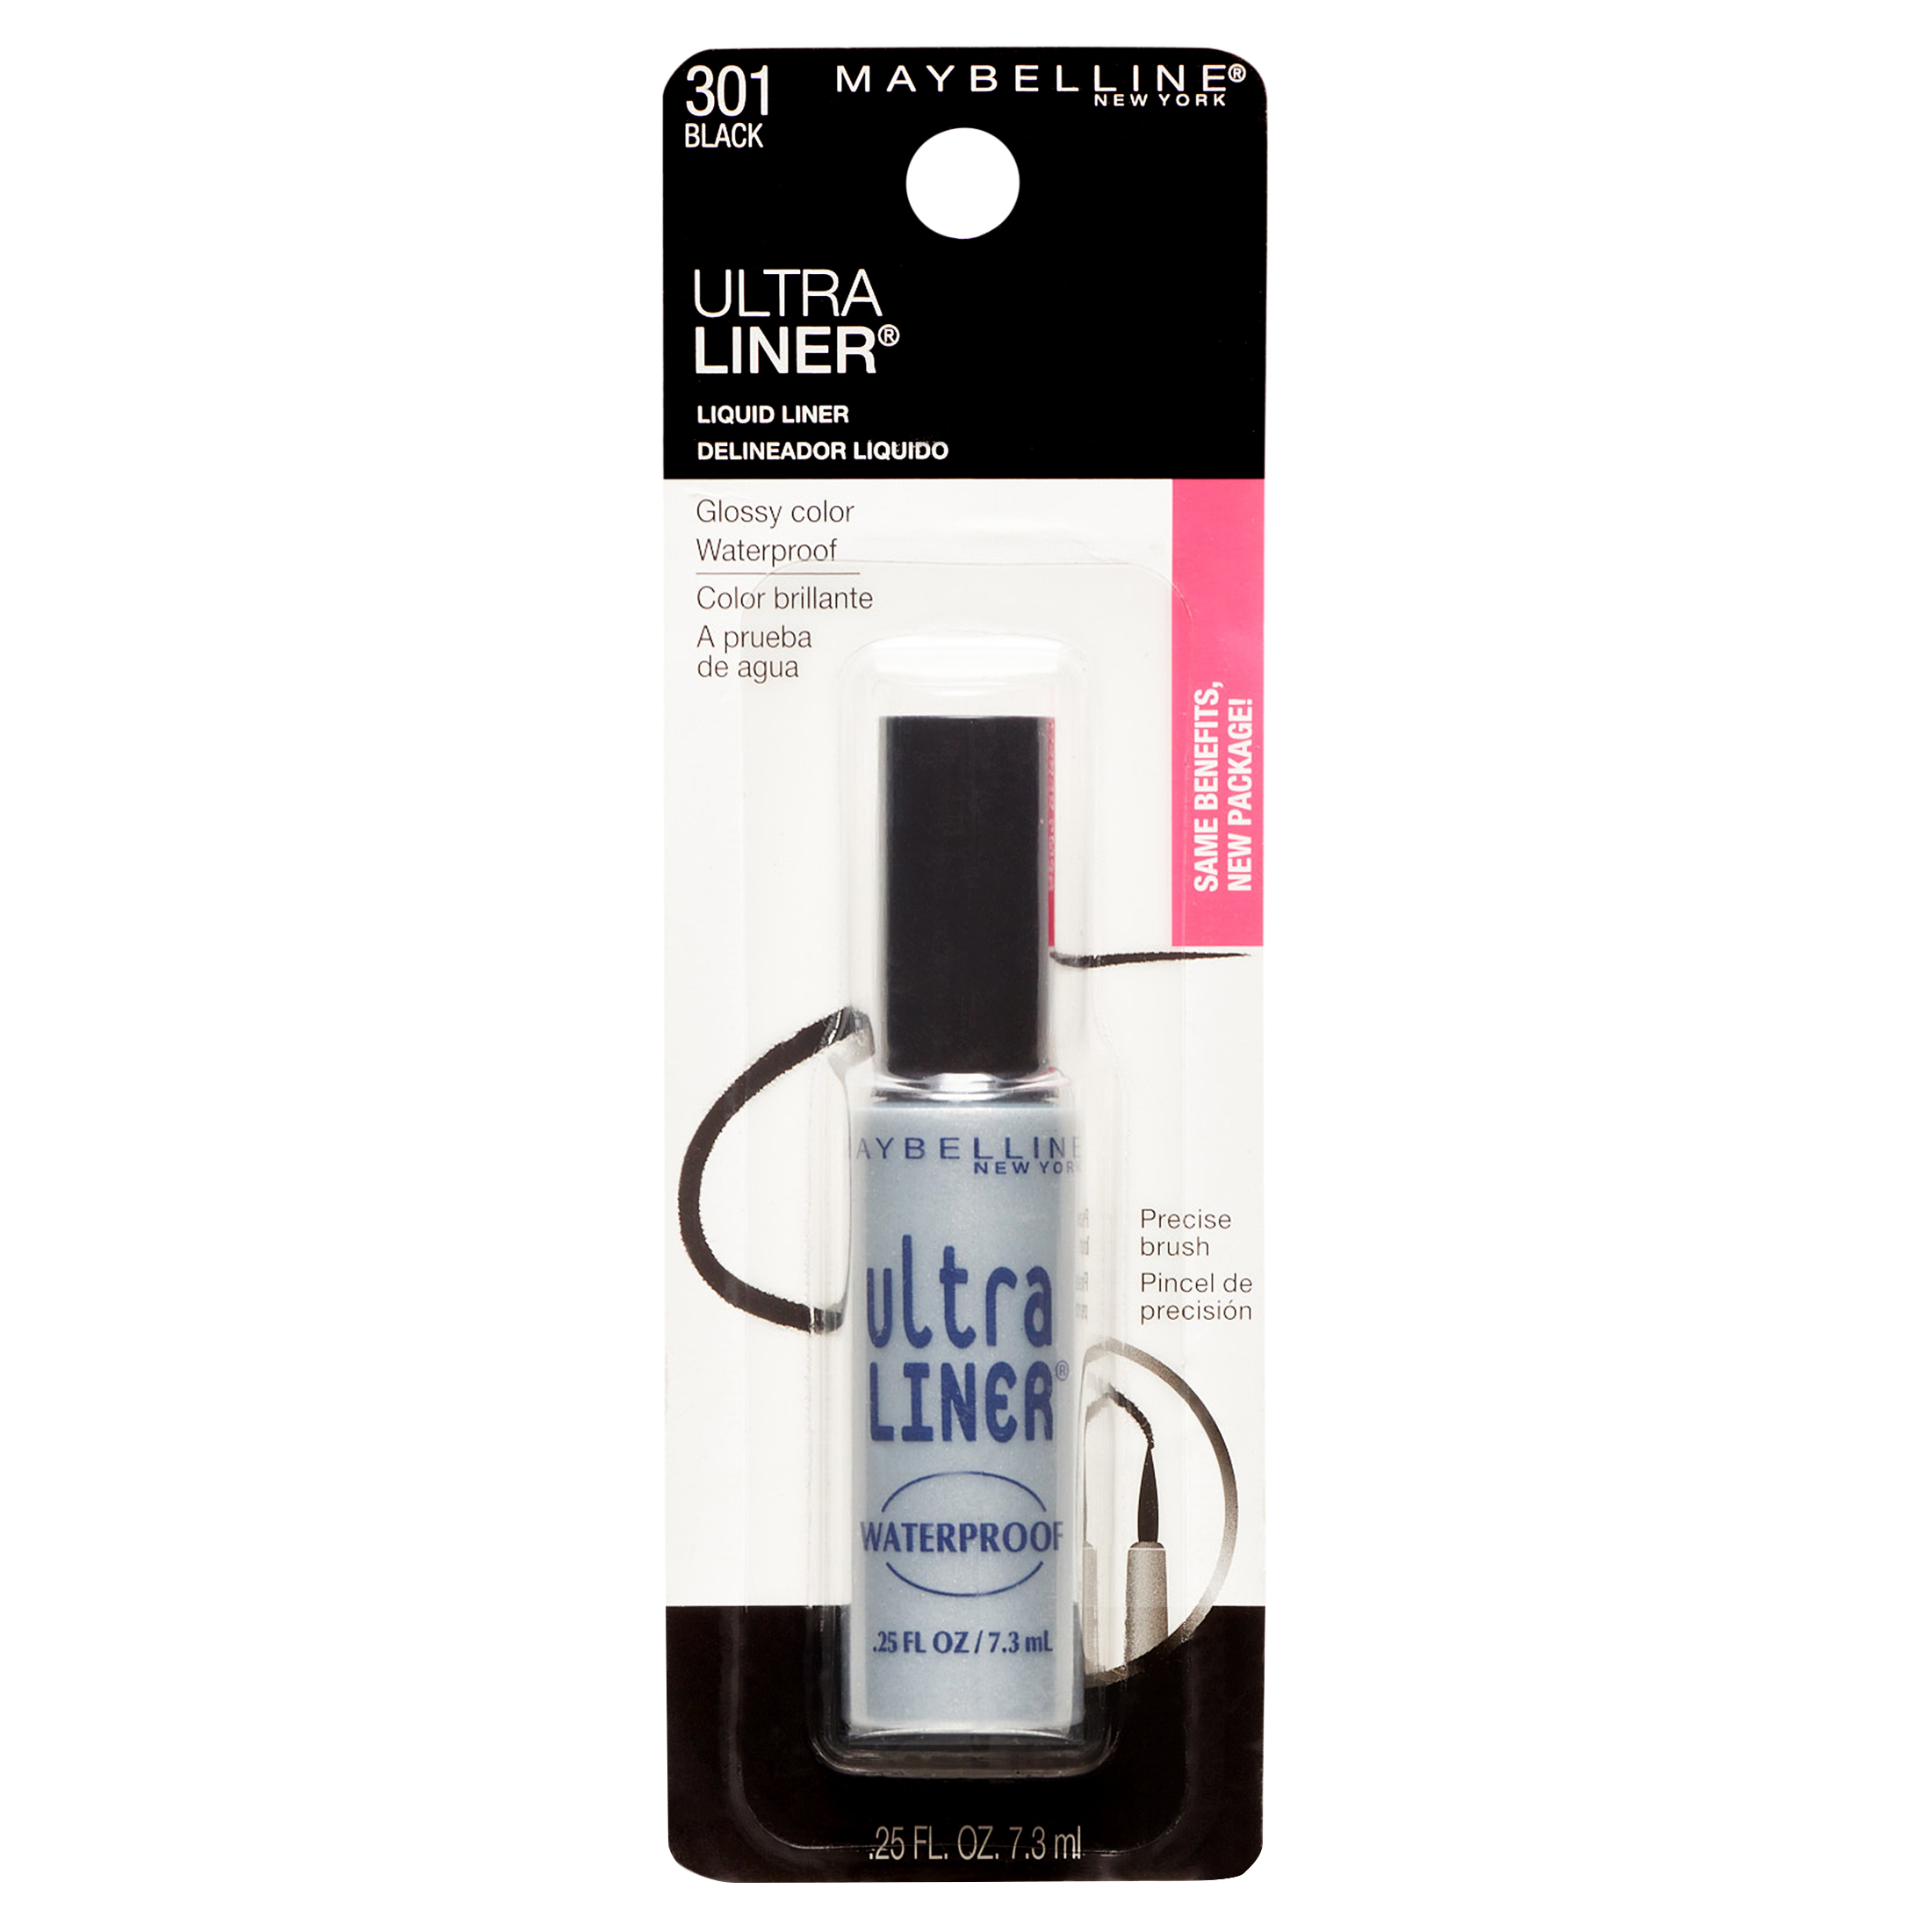 Maybelline Ultra Liner Waterproof Liquid Eyeliner, Black - image 10 of 16